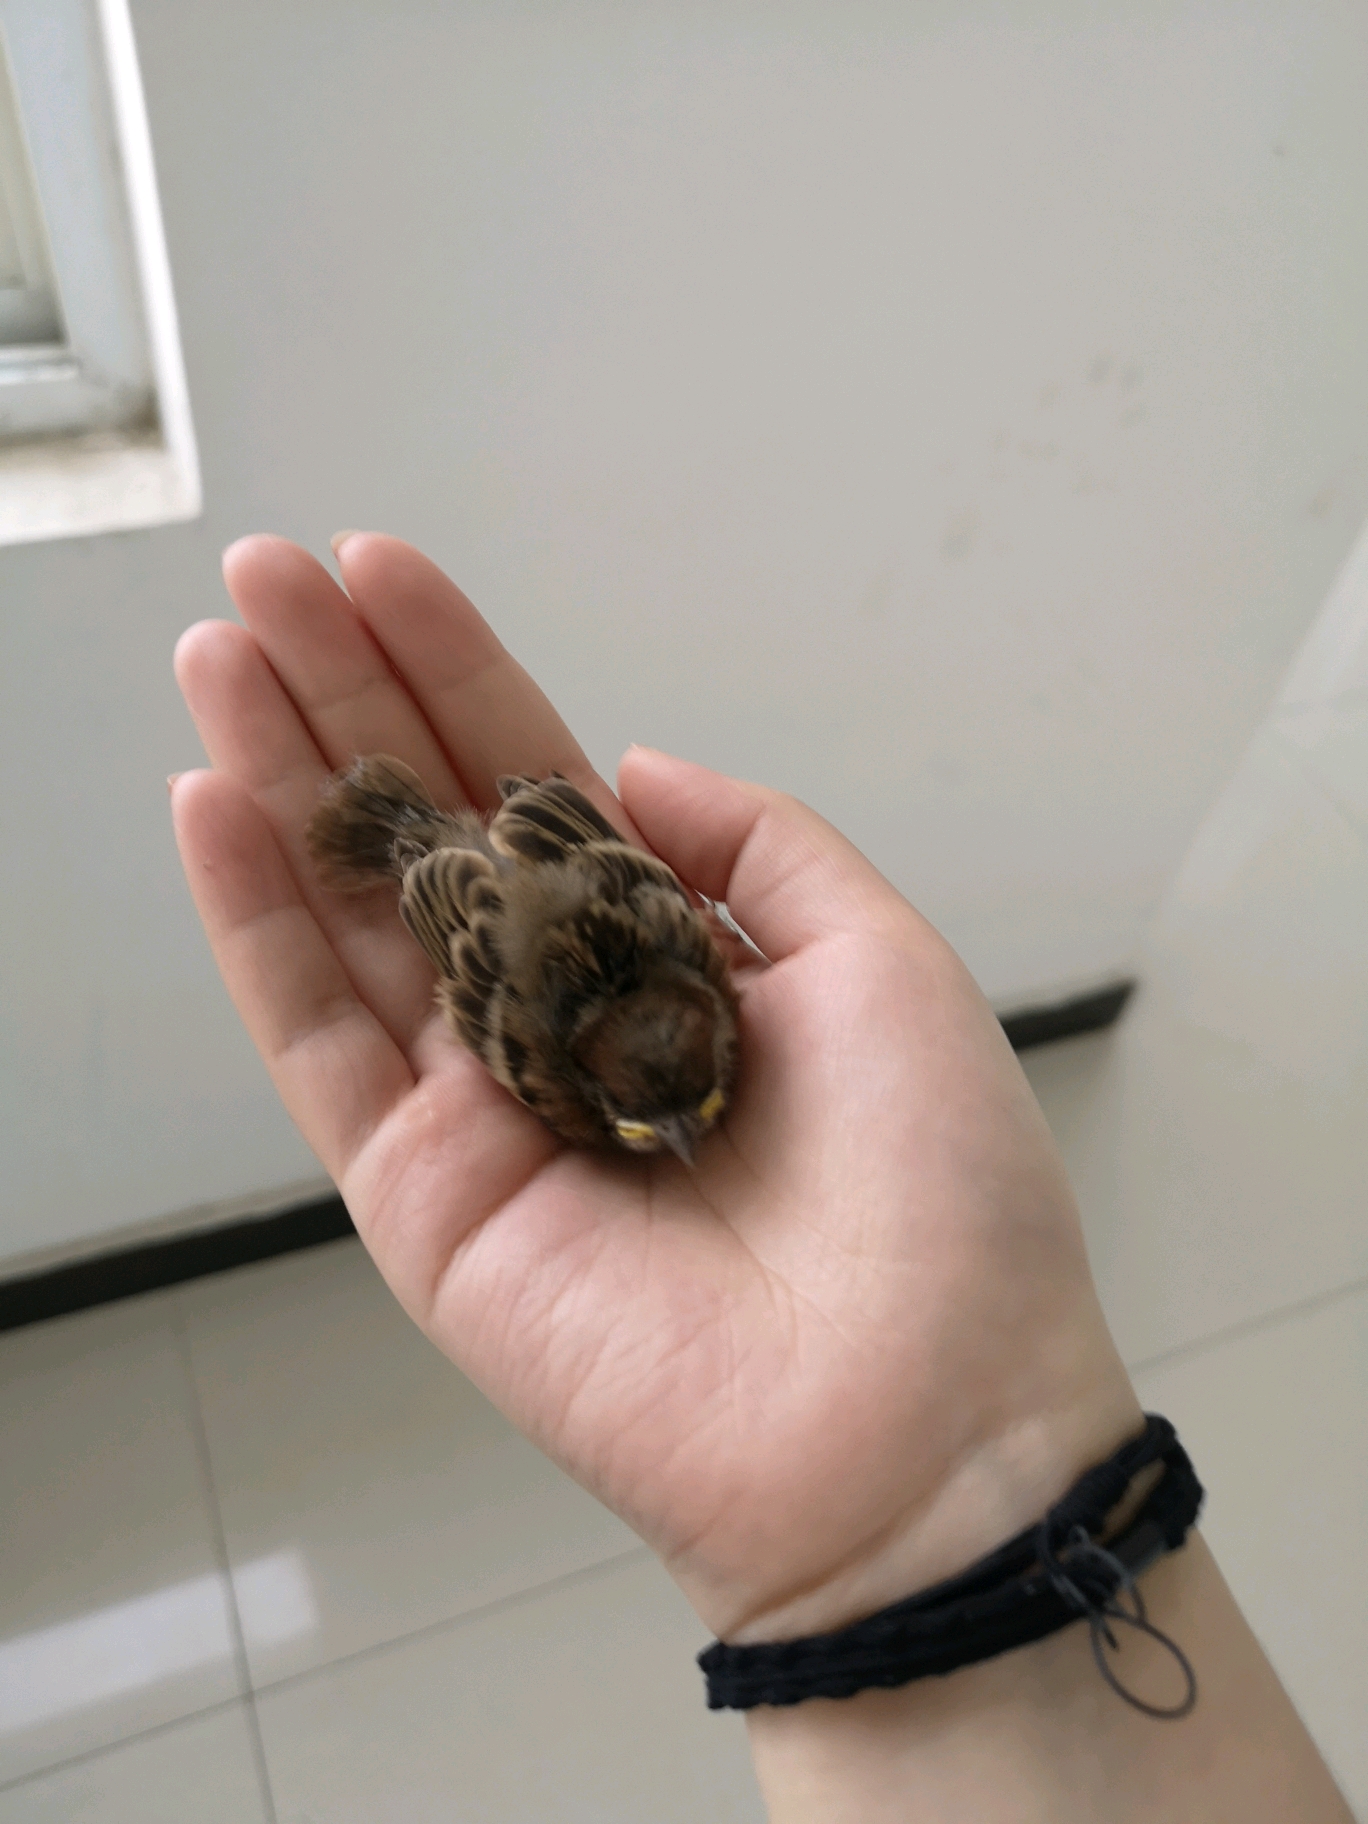 捡到麻雀幼崽救命 因为这几天都是下雨,今天在办公楼里发现两只小麻雀